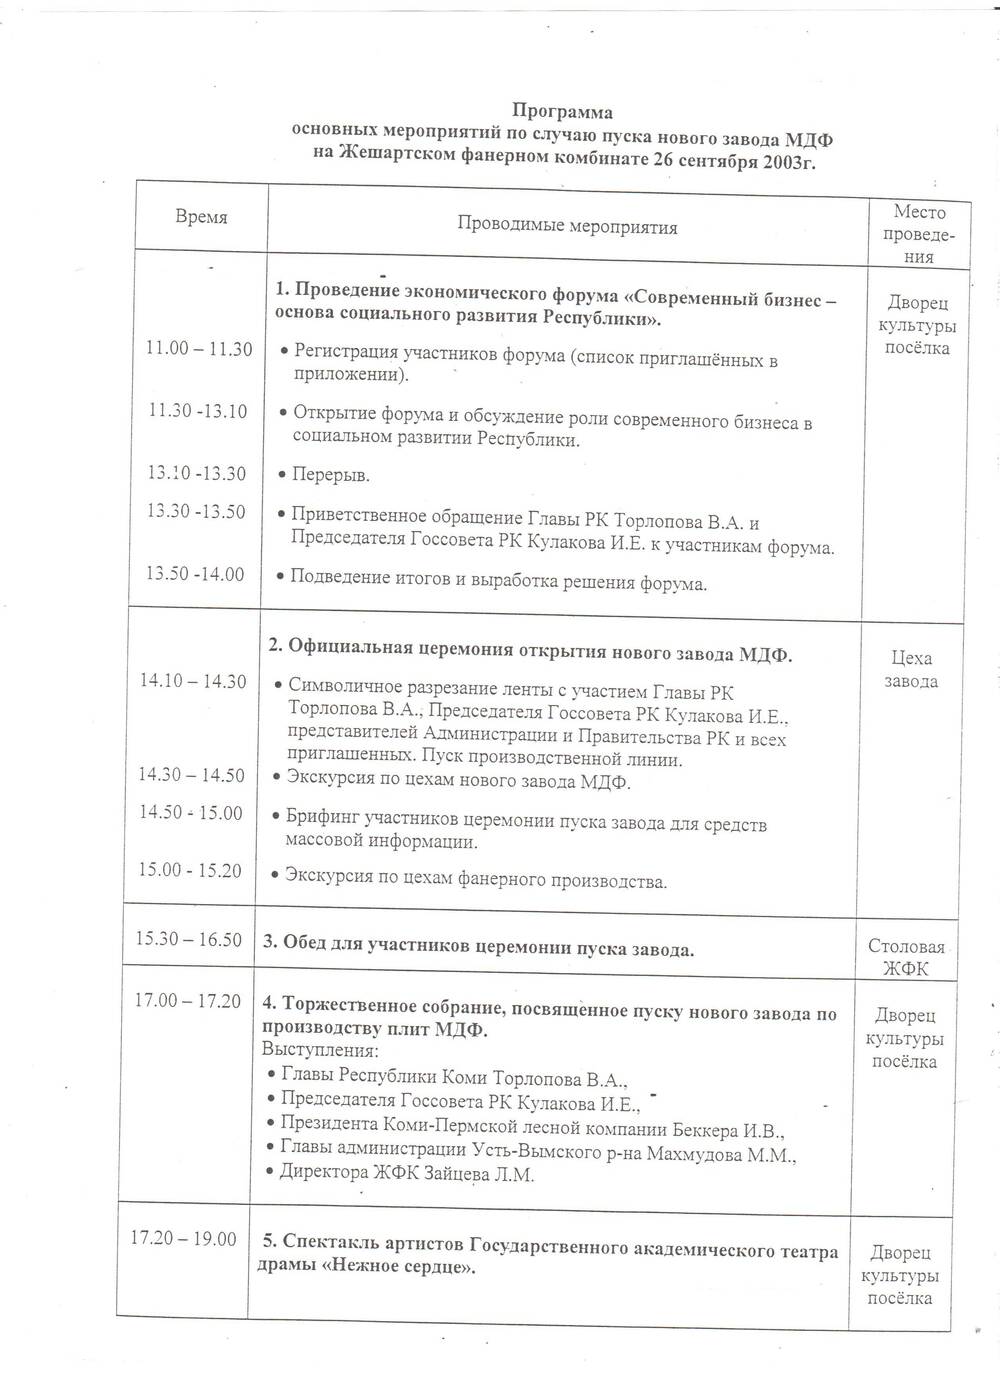 Документ Программа основных мероприятий по случаю пуска нового завода МДФ